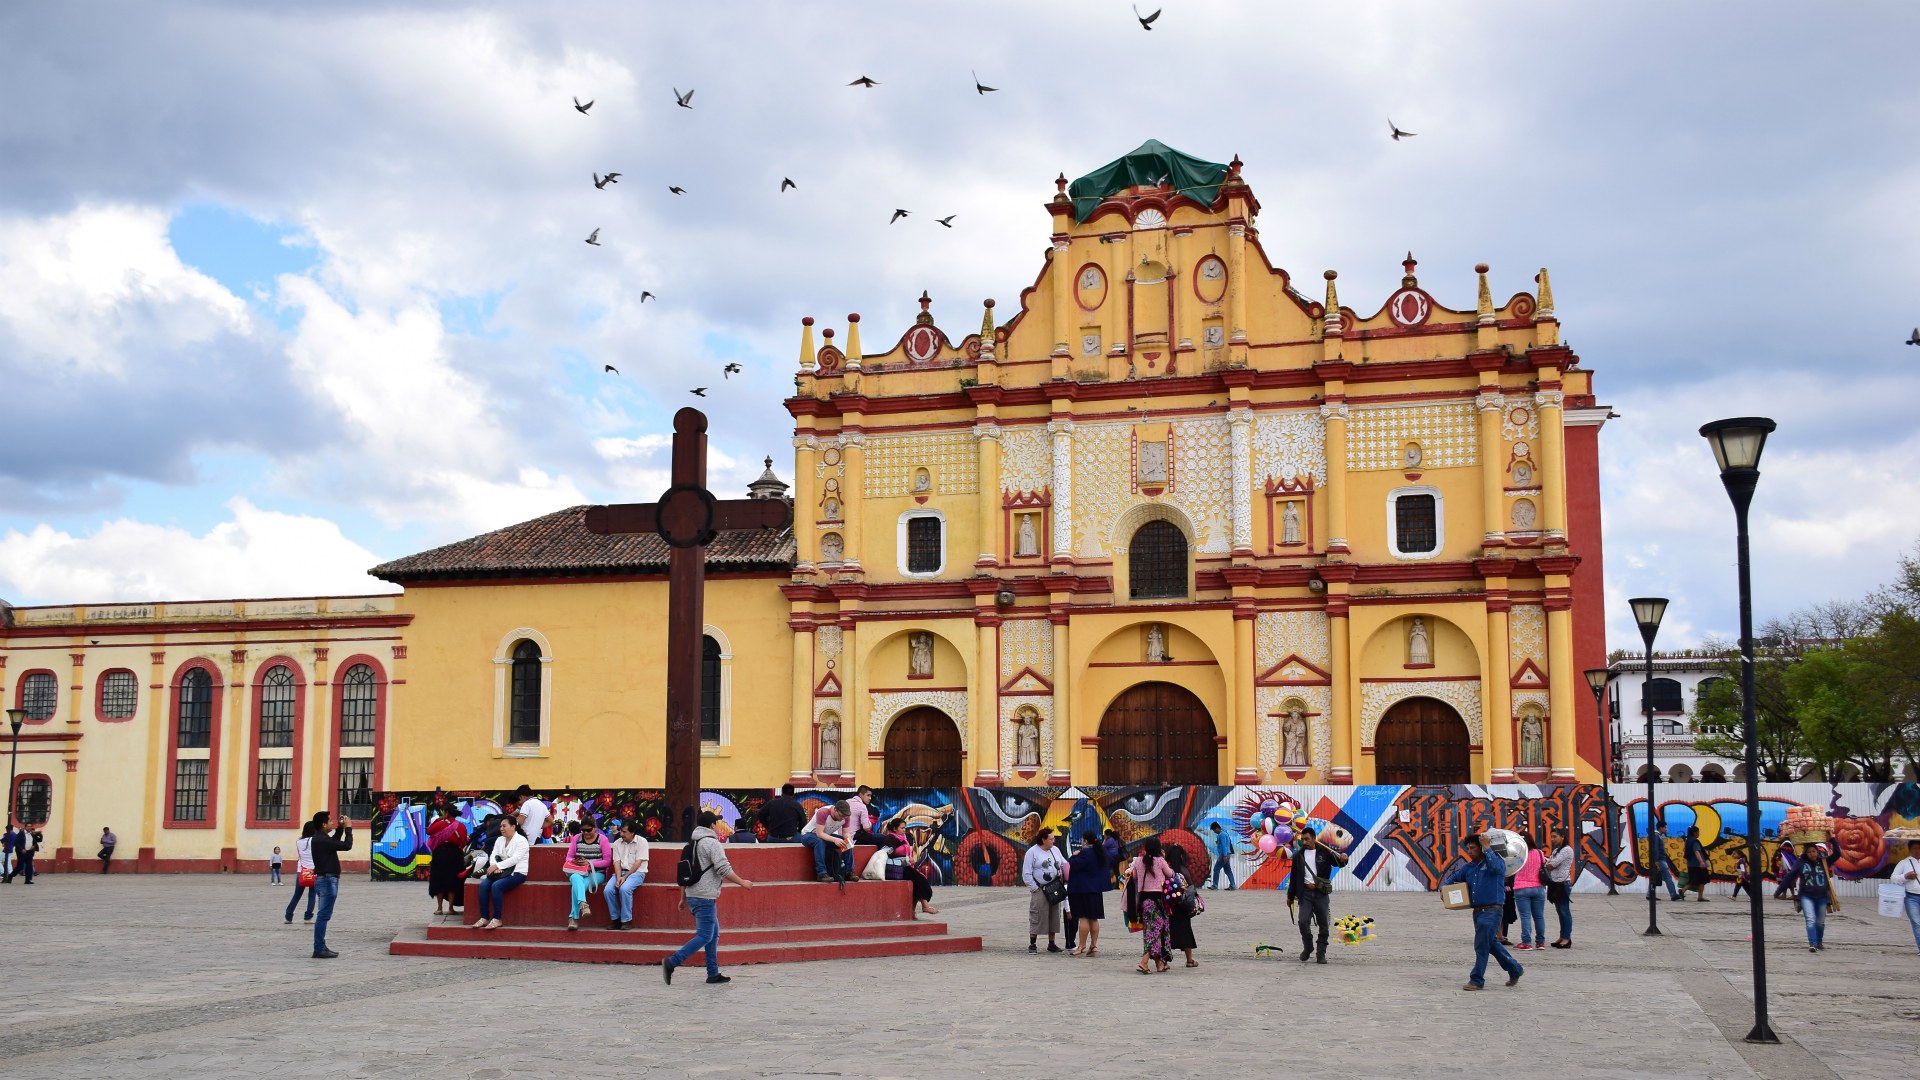 Cathedral, San Cristobal de las Casas. Mexico